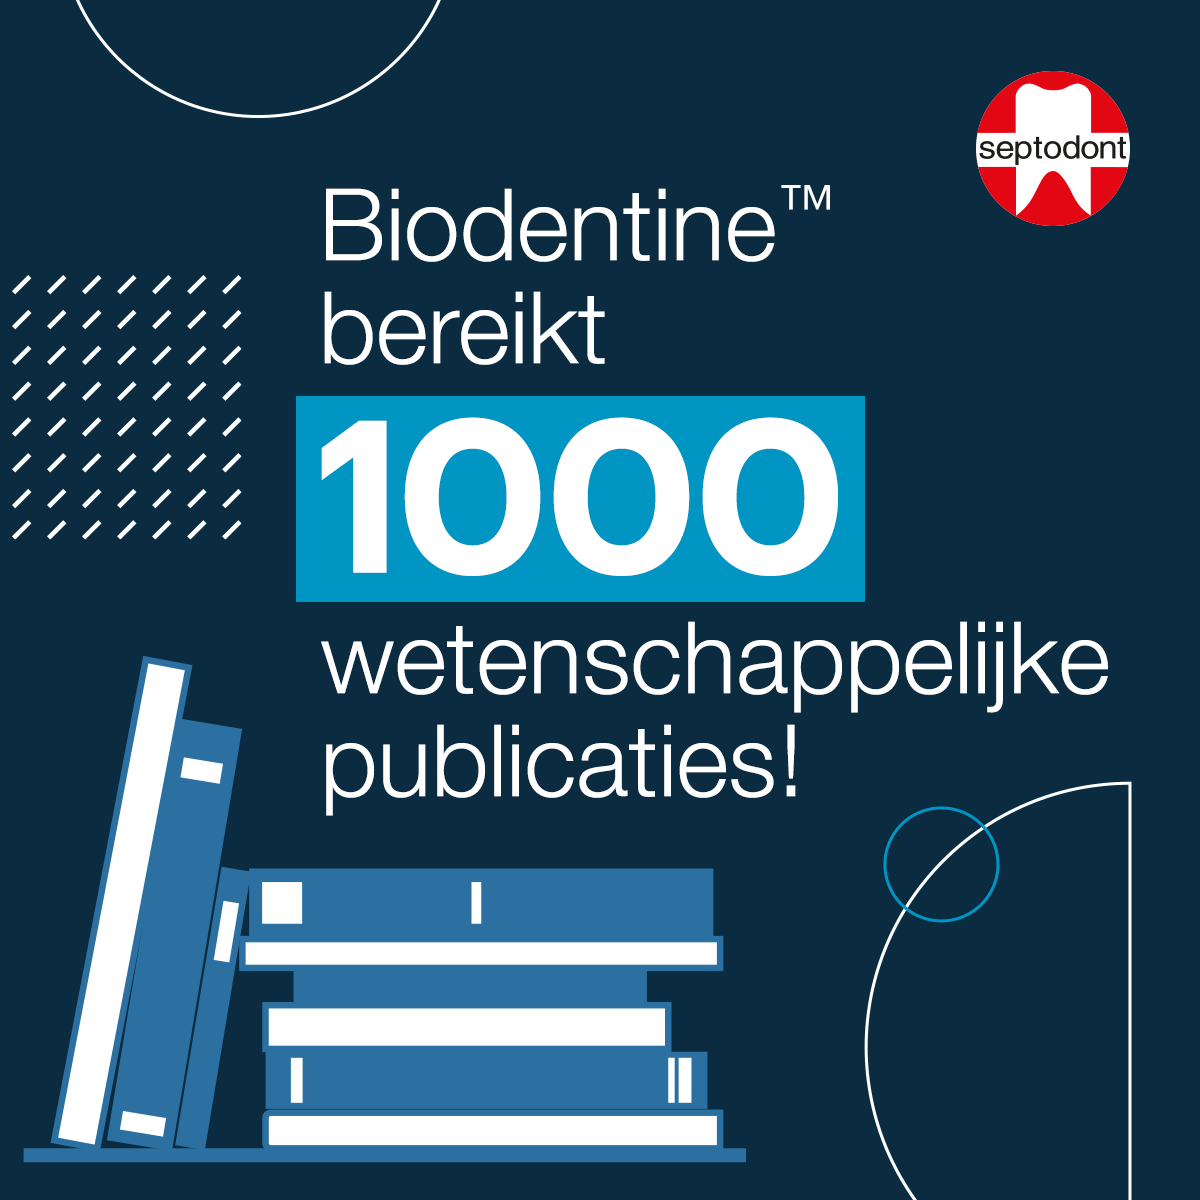 Biodentine bereikt een nieuwe mijlpaal met 1000 wetenschappelijke publicaties!